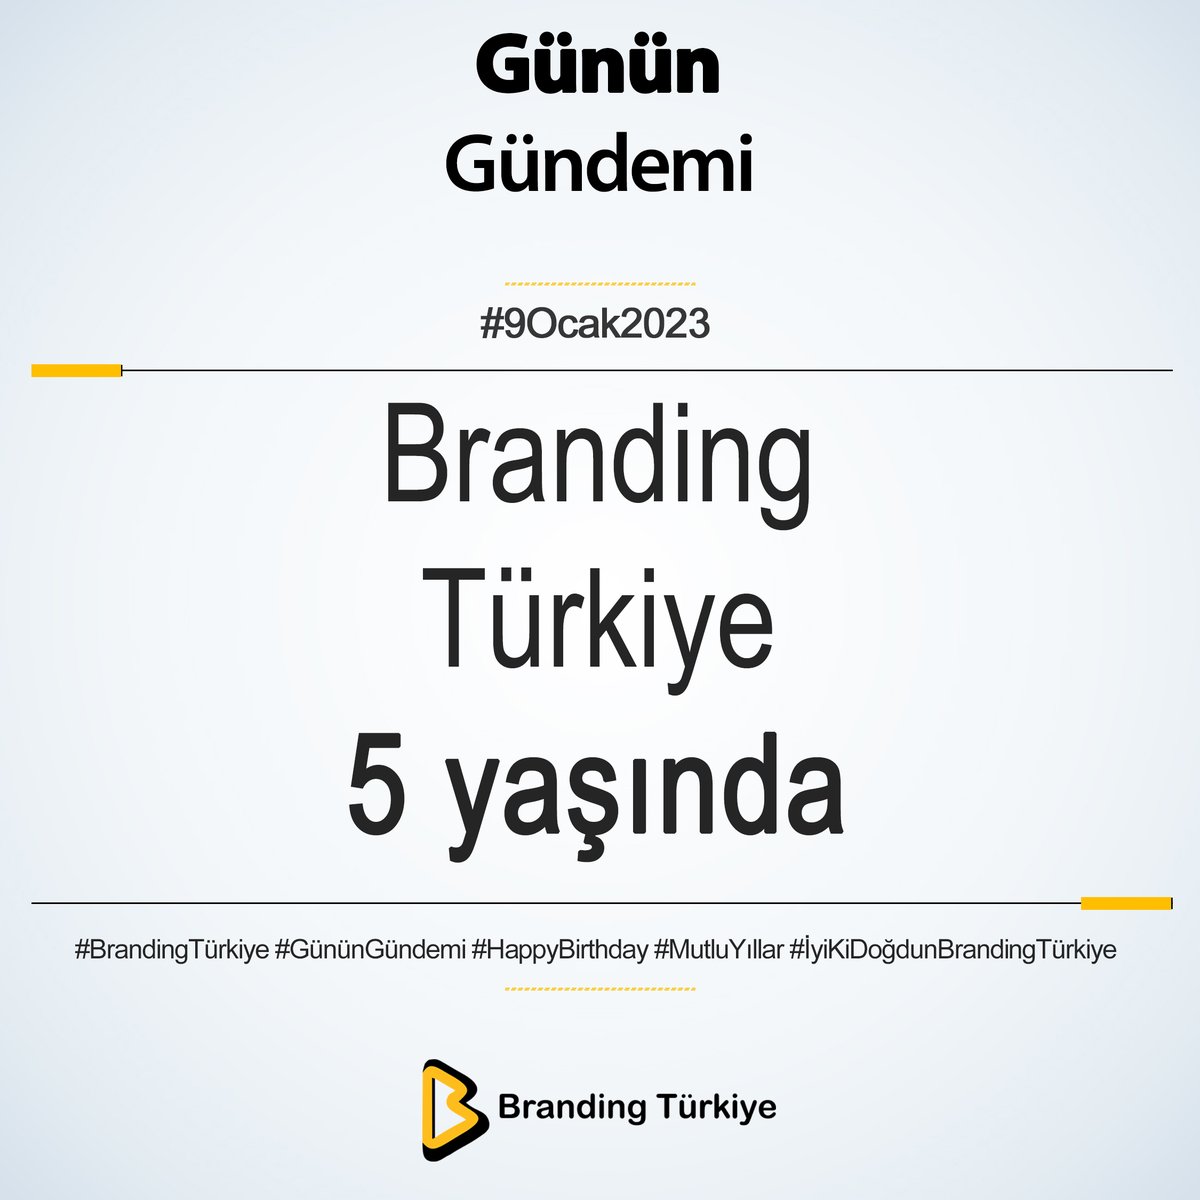 #9Ocak2023

Branding Türkiye 5 yaşında!

▶ brandingturkiye.com
#BrandingTürkiye #GününGündemi #Haberler #BrandingTürkiyeÖneriyor #BrandingTürkiyeTv #BrandingTürkiyeYayınları #HoşGeldin2022 #DijitalMarkalaşma #BrandingTürkiyeTv  #BrandingMeetup #HaniKurumsaldık #Podcast